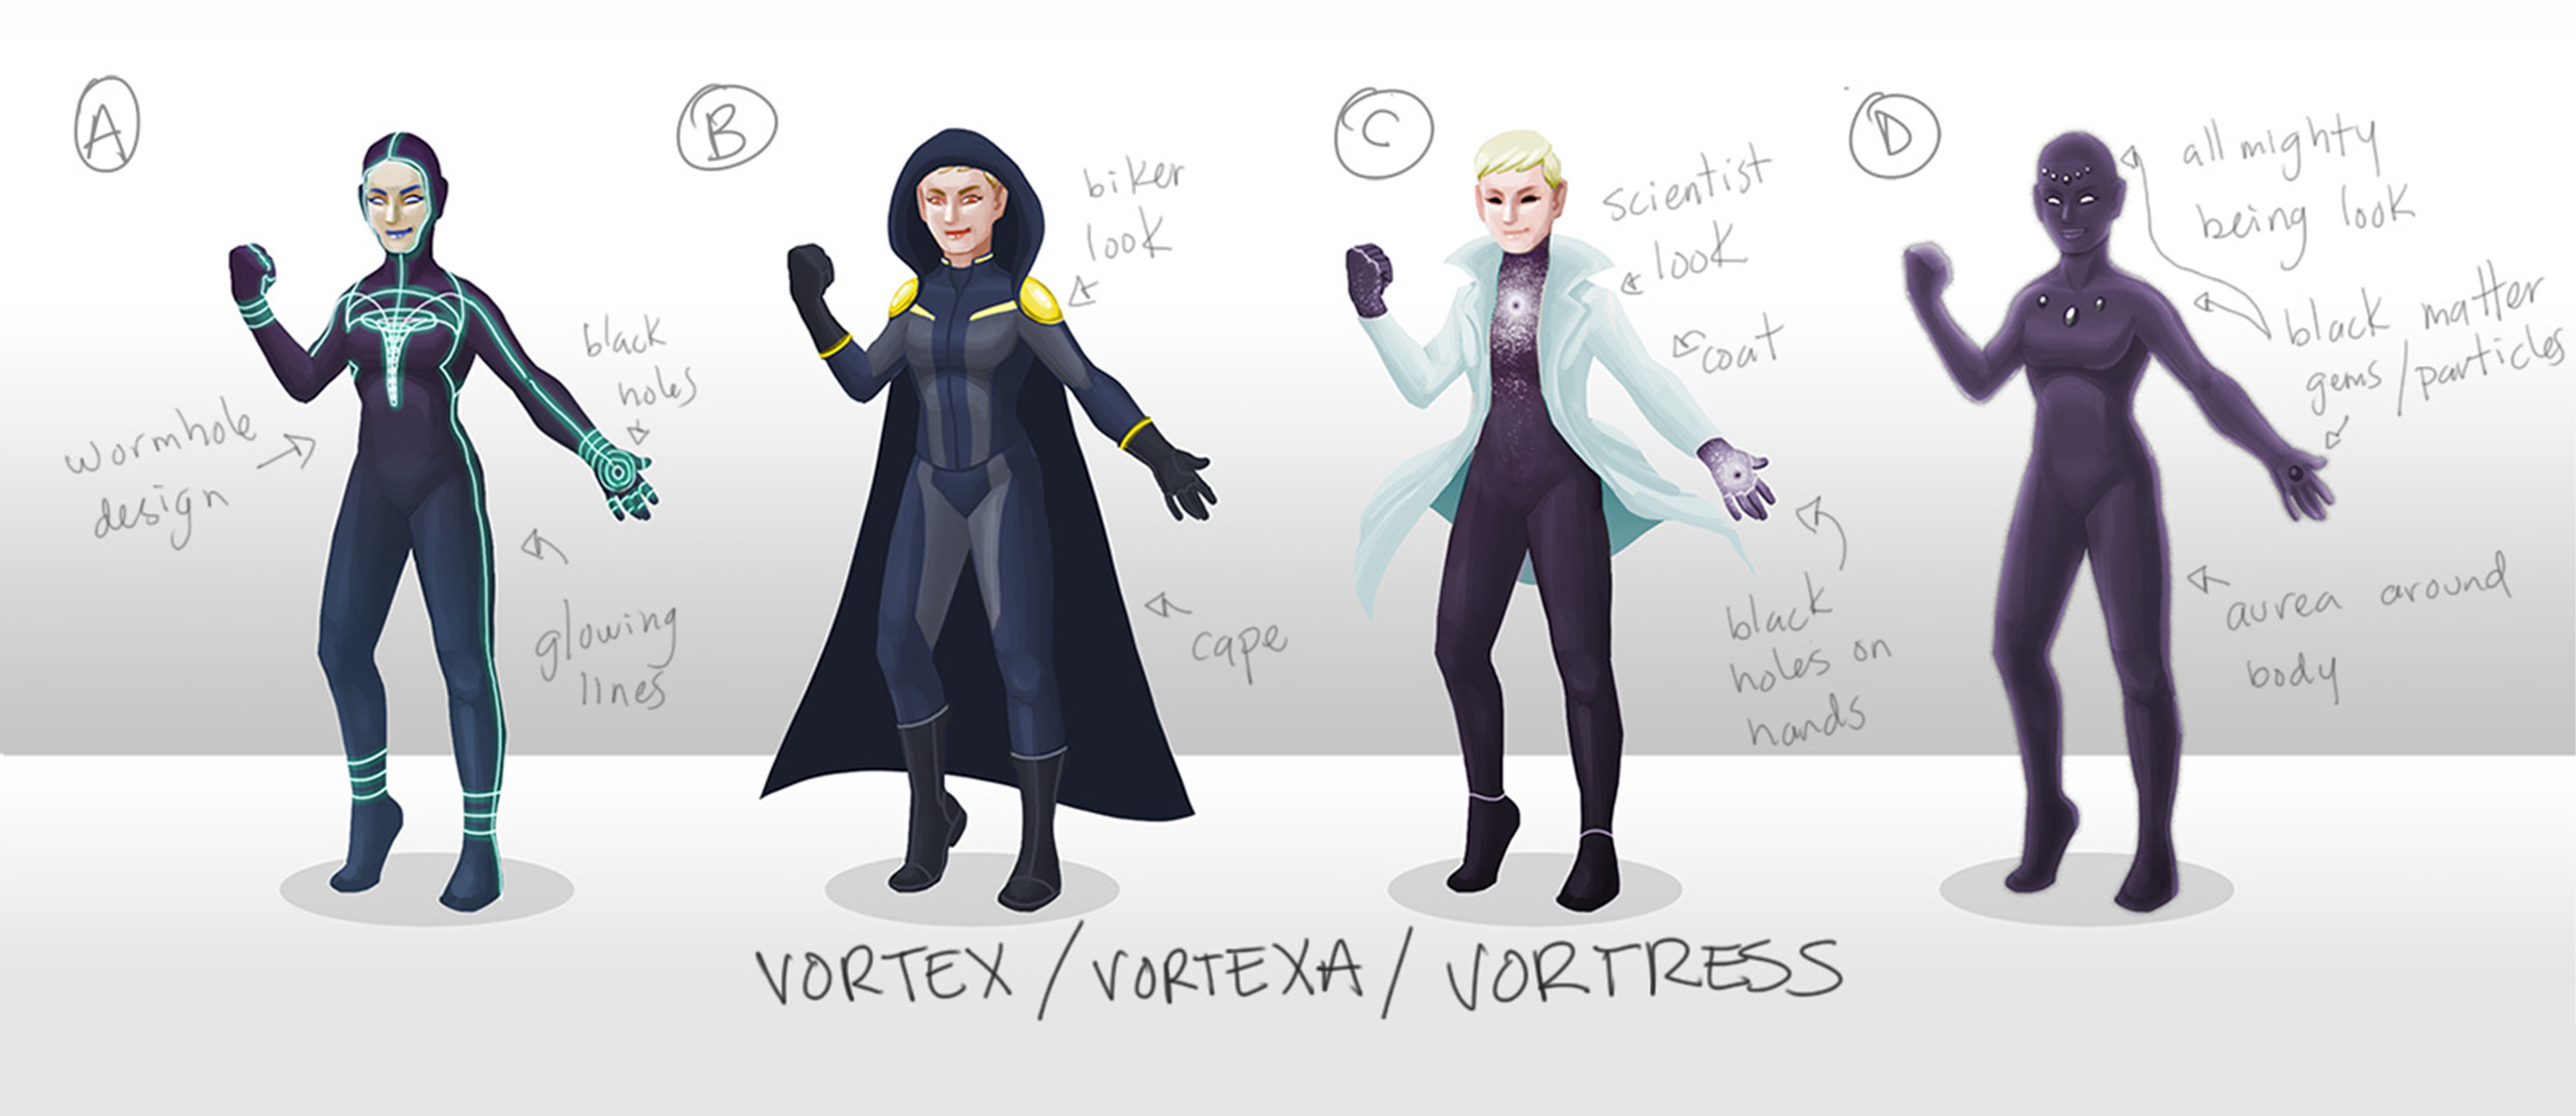 Vortex/Vortexa/Vortress.